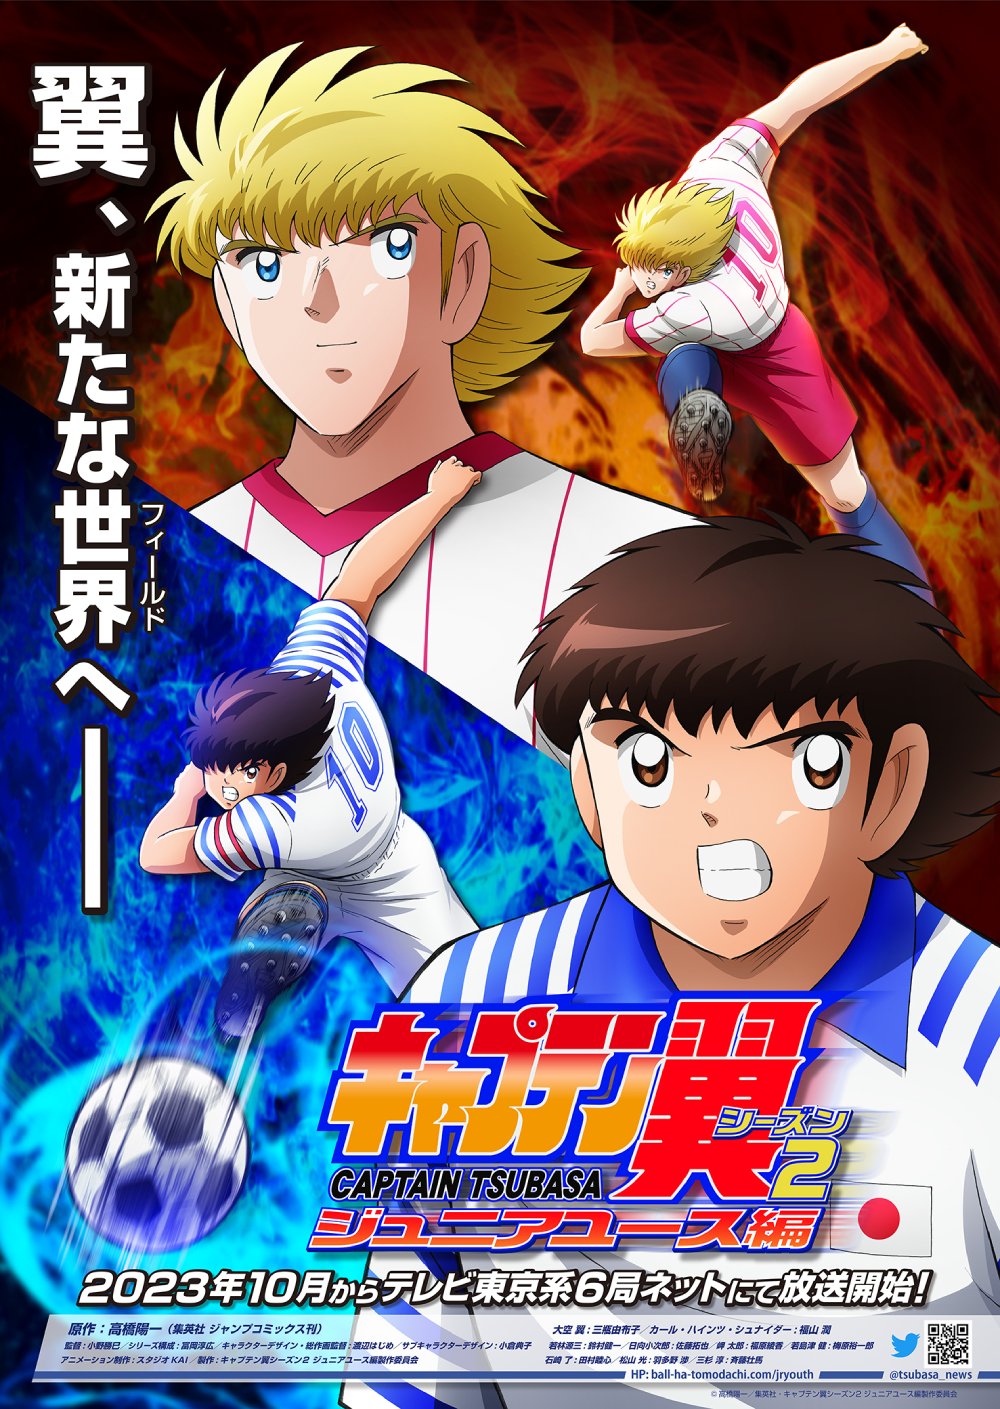 Captain Tsubasa Anime Gets 2nd Season